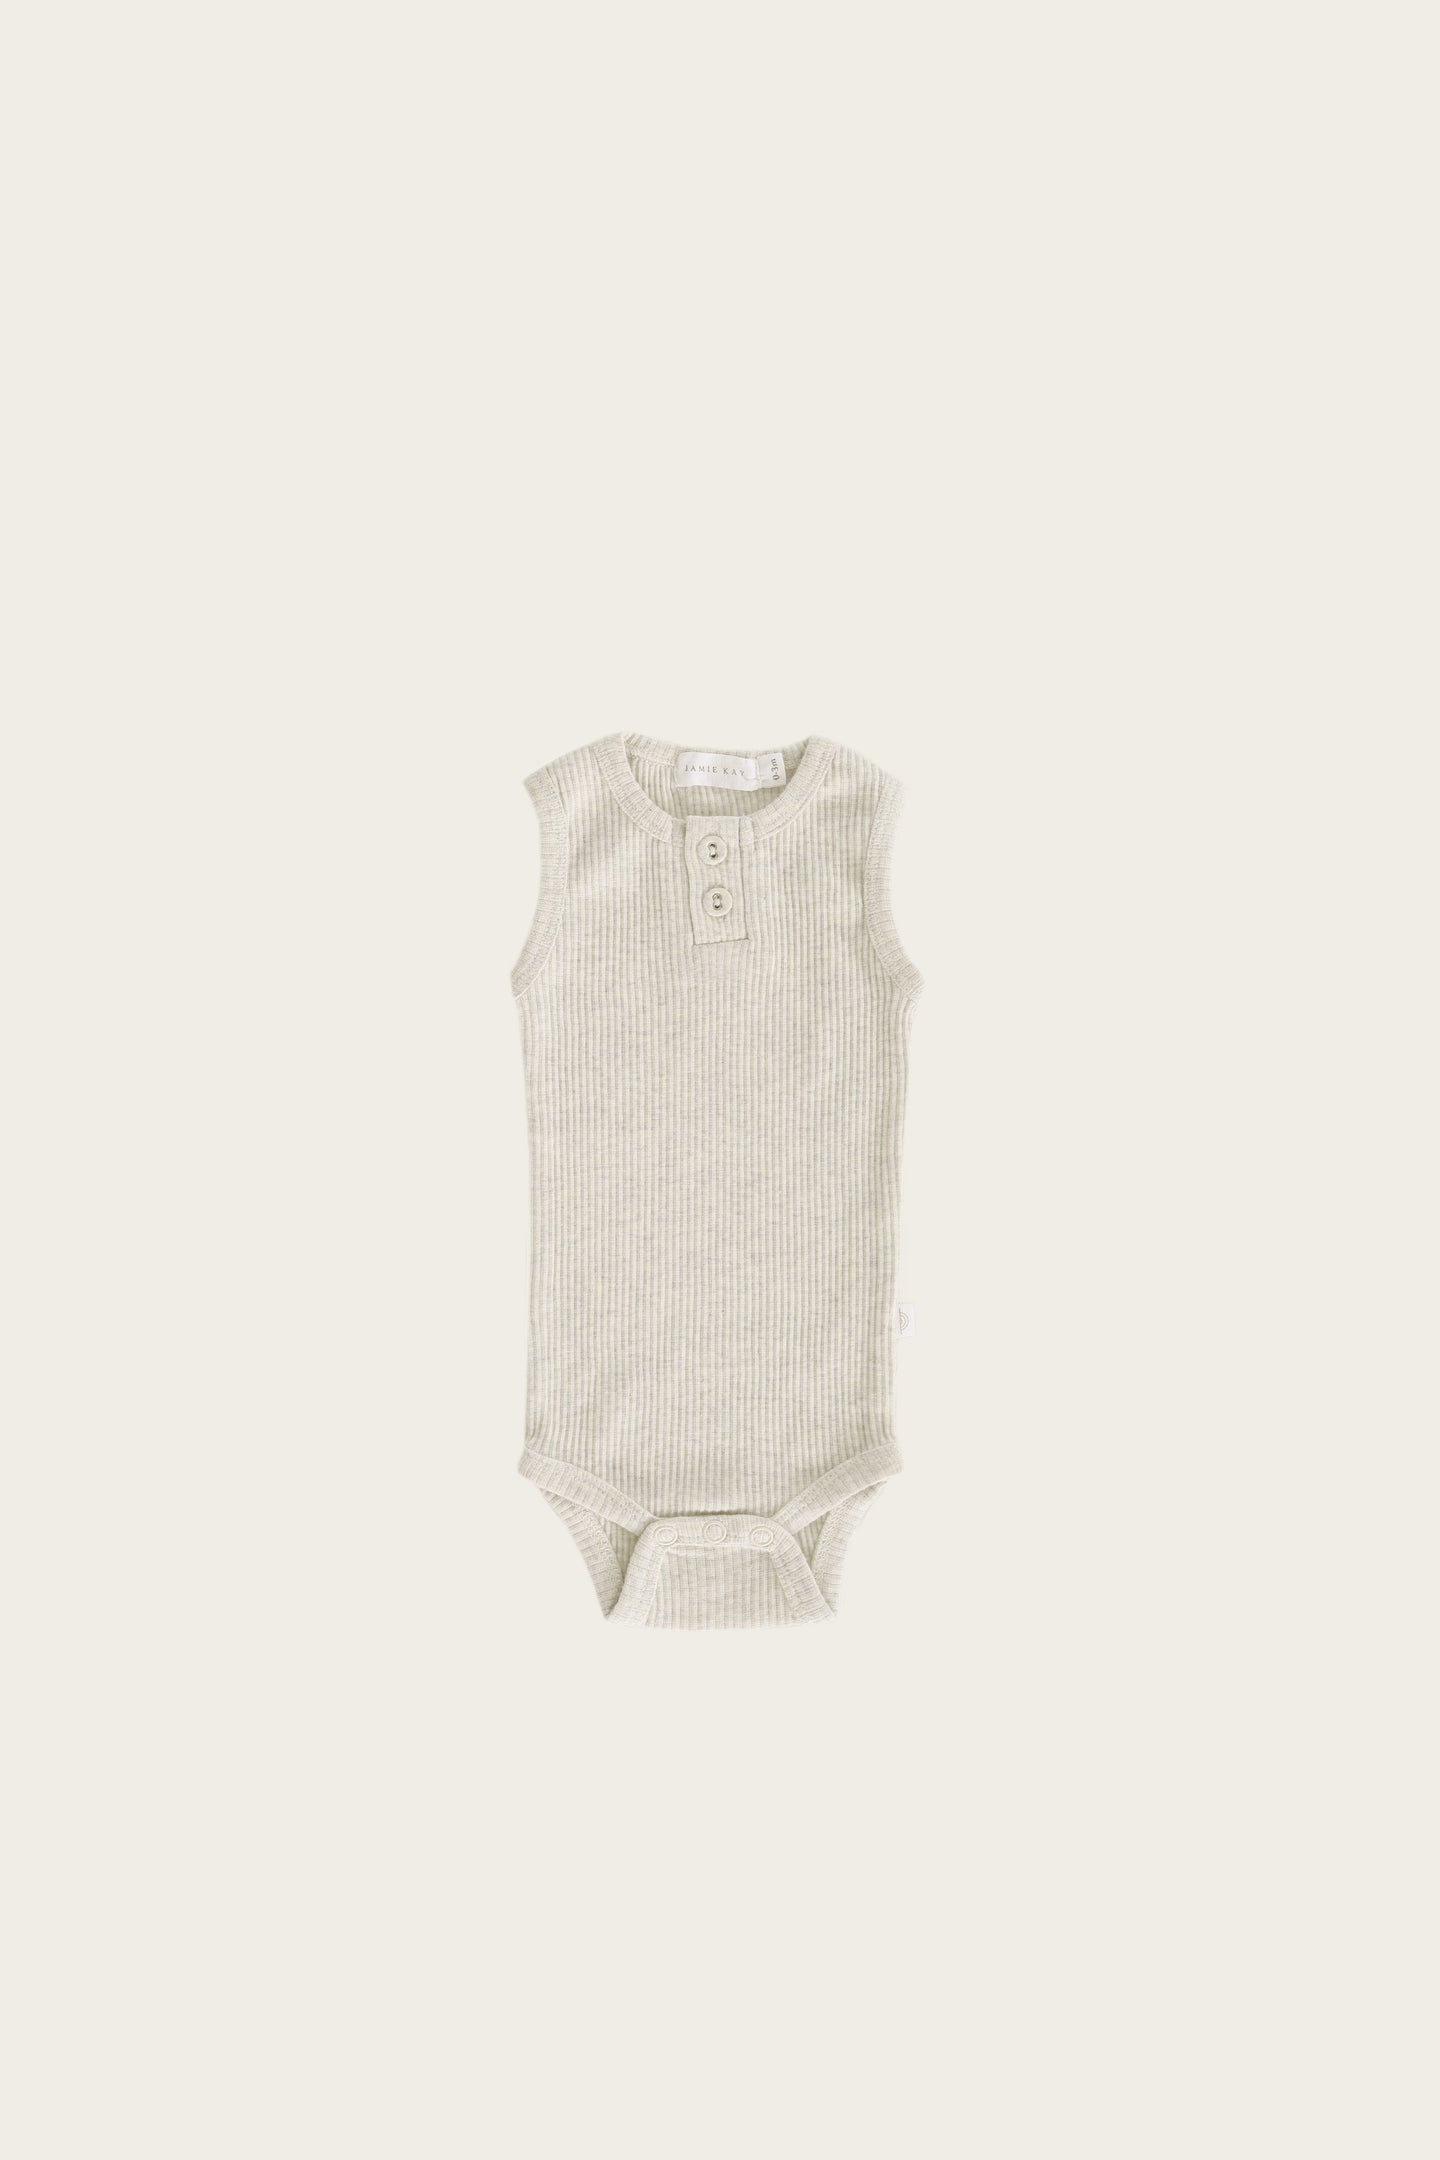 Jamie Kay - Organic Essential Singlet Bodysuit - Oatmeal Marle